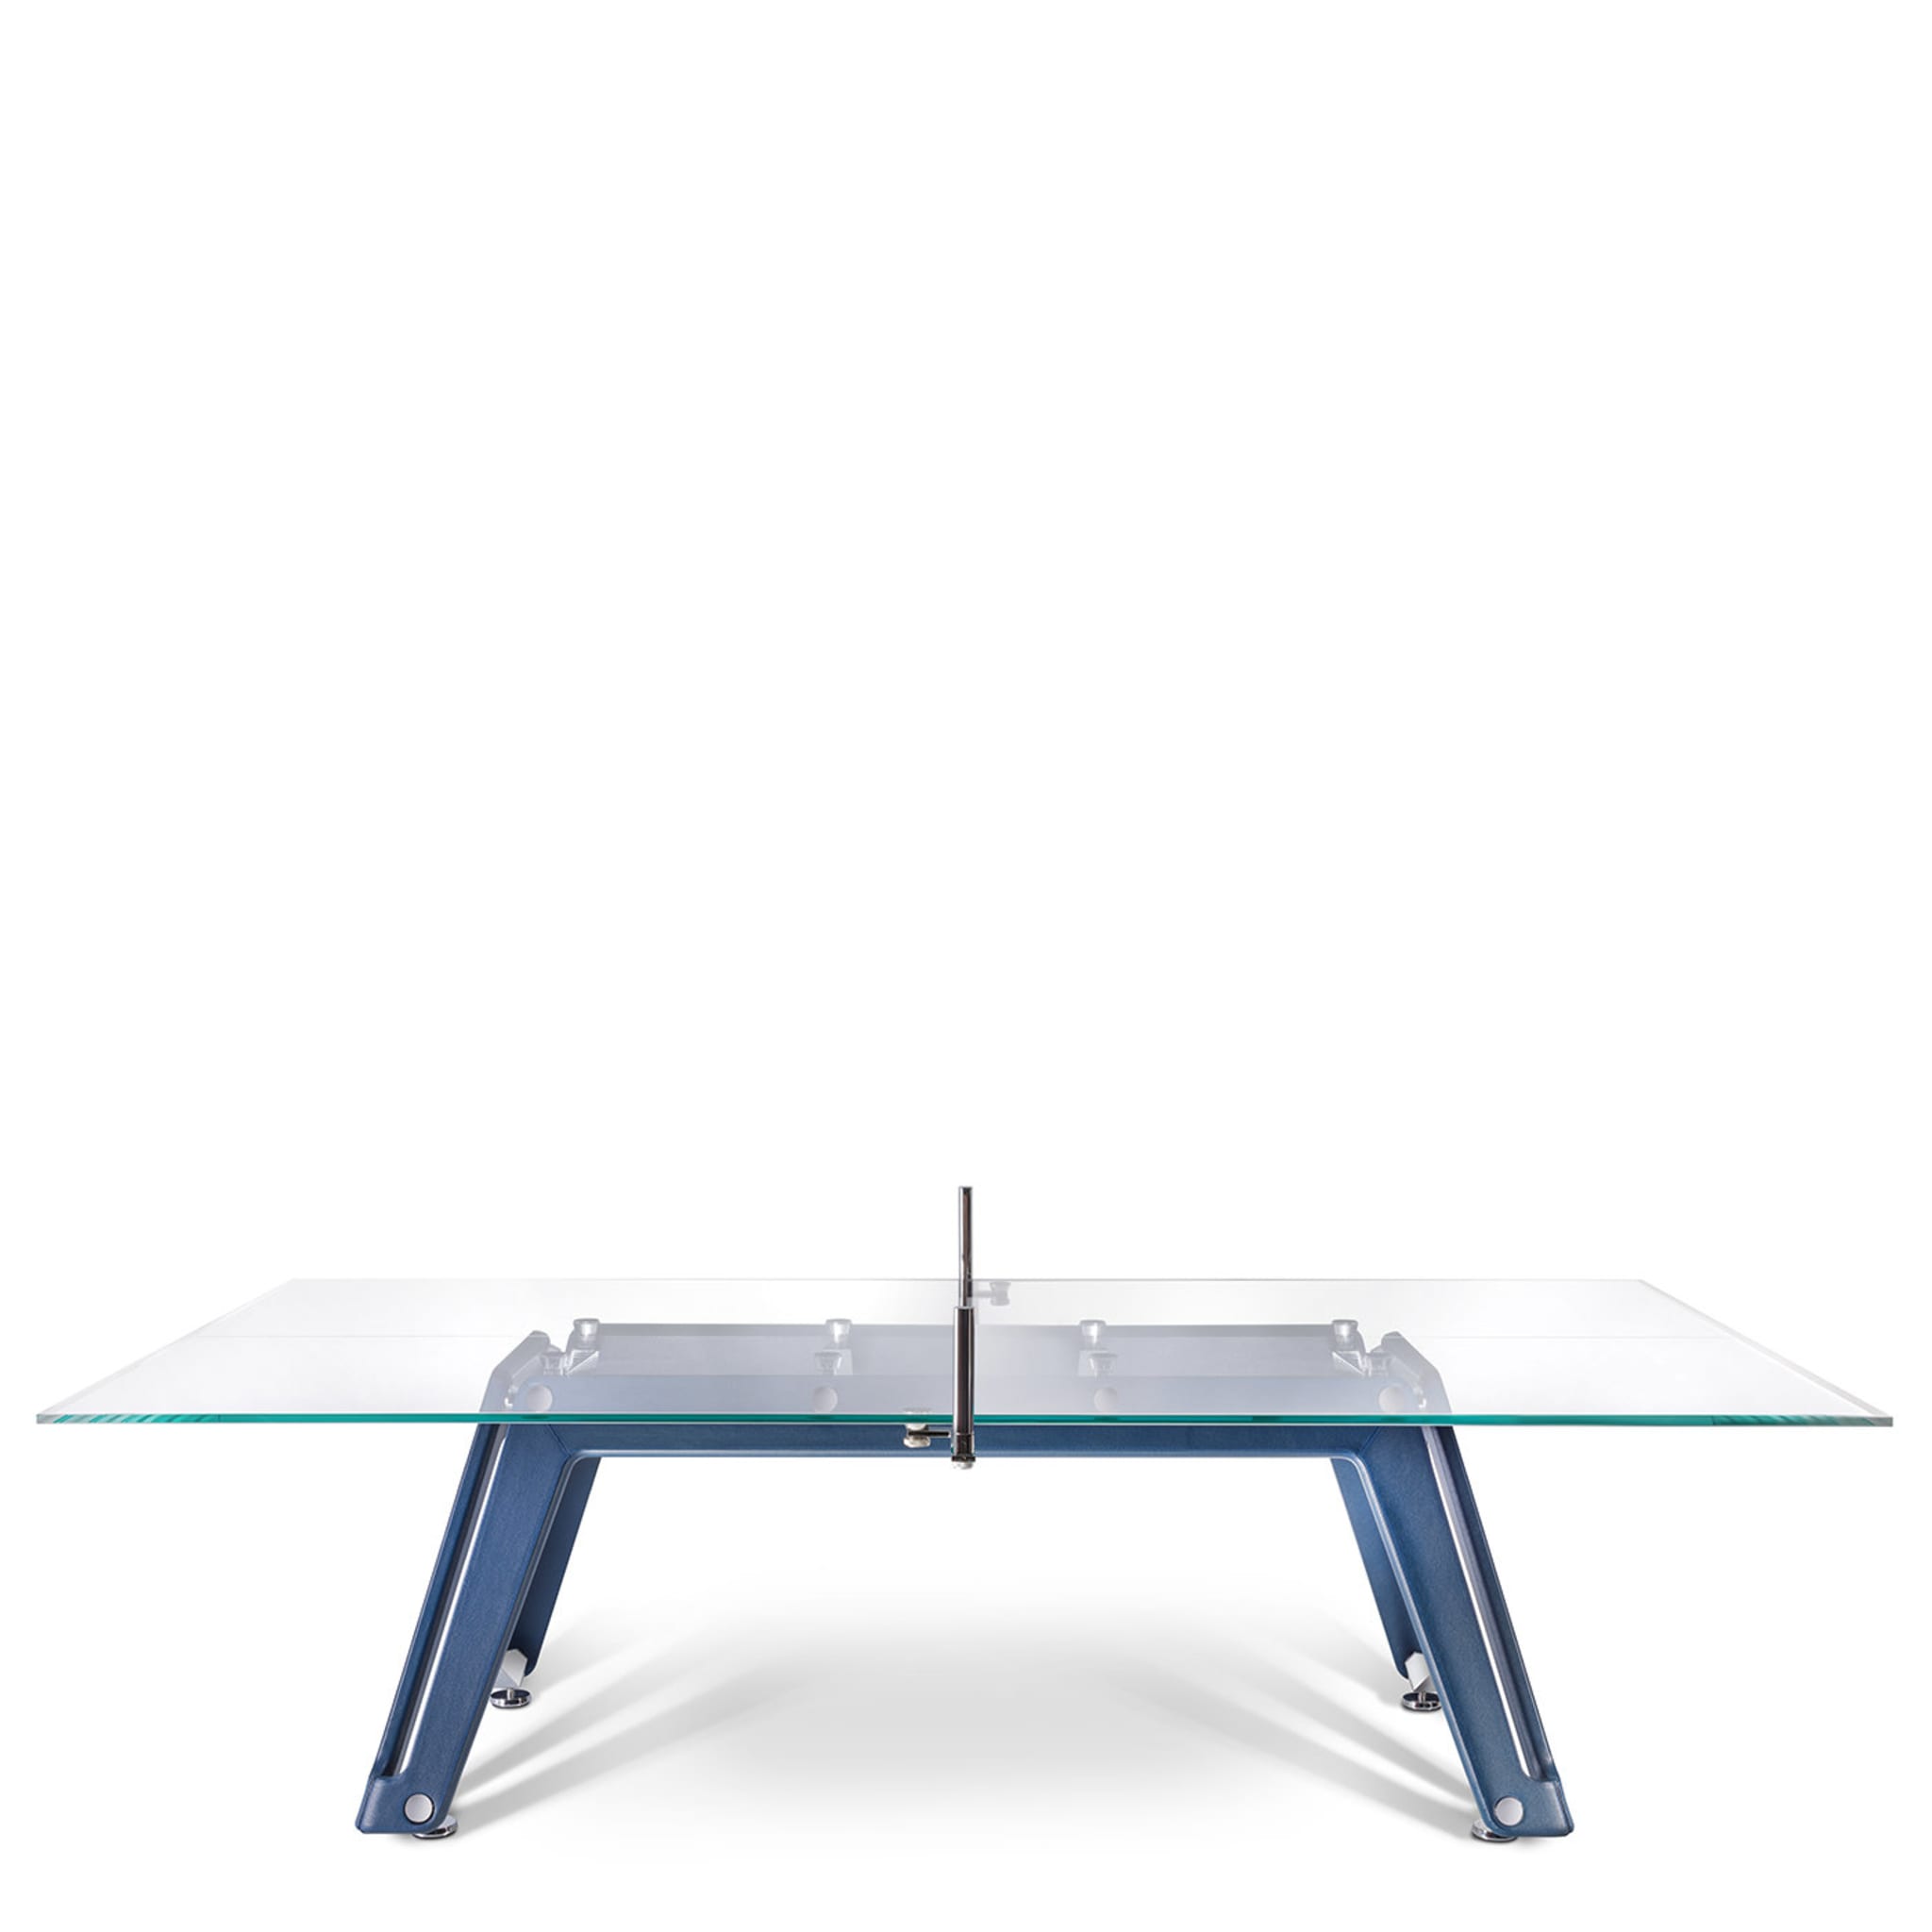 Table de tennis de table en verre Lungolinea par Adriano Design - Vue alternative 2